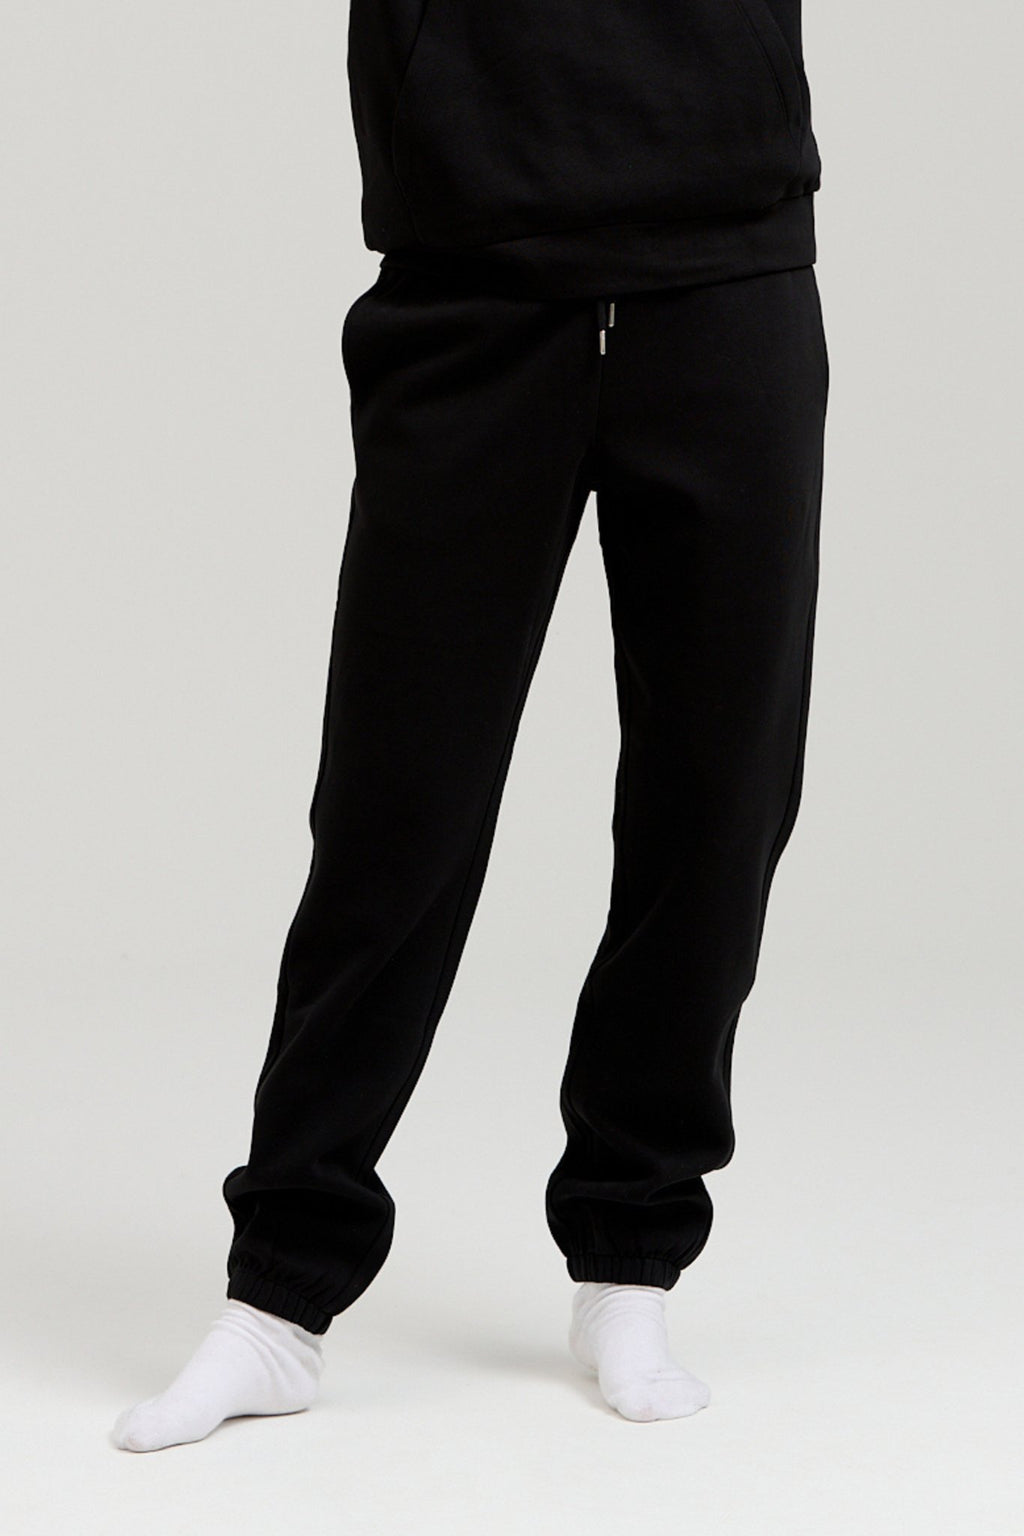 Basic Sweatsuit mit Hoodie (schwarz) - Paketgeschäft (Frauen)